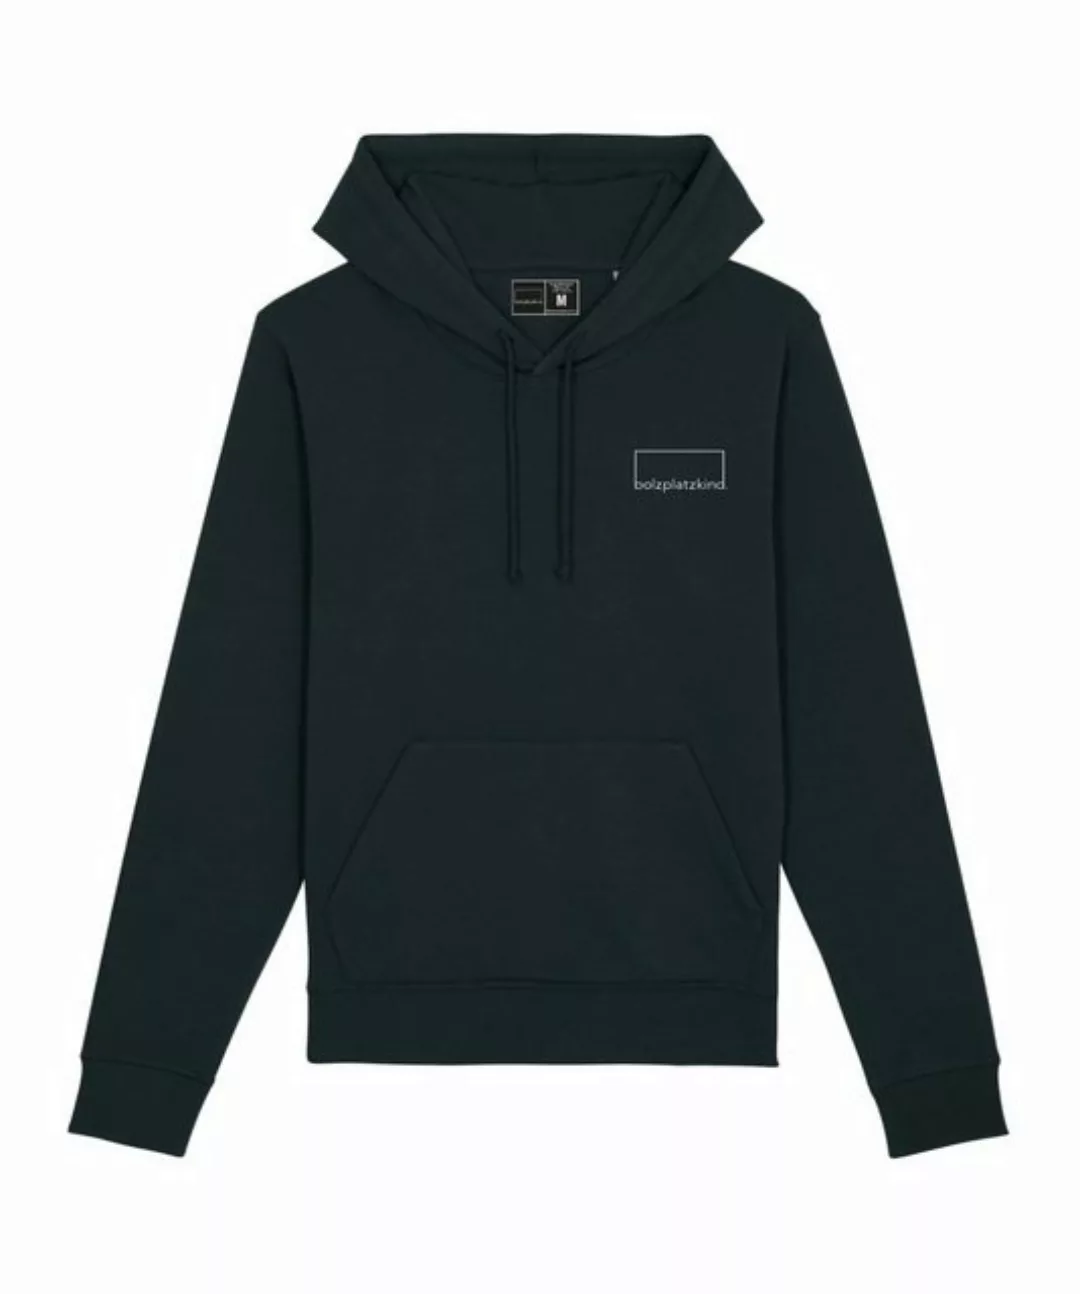 Bolzplatzkind Sweatshirt "Classic" Hoody günstig online kaufen